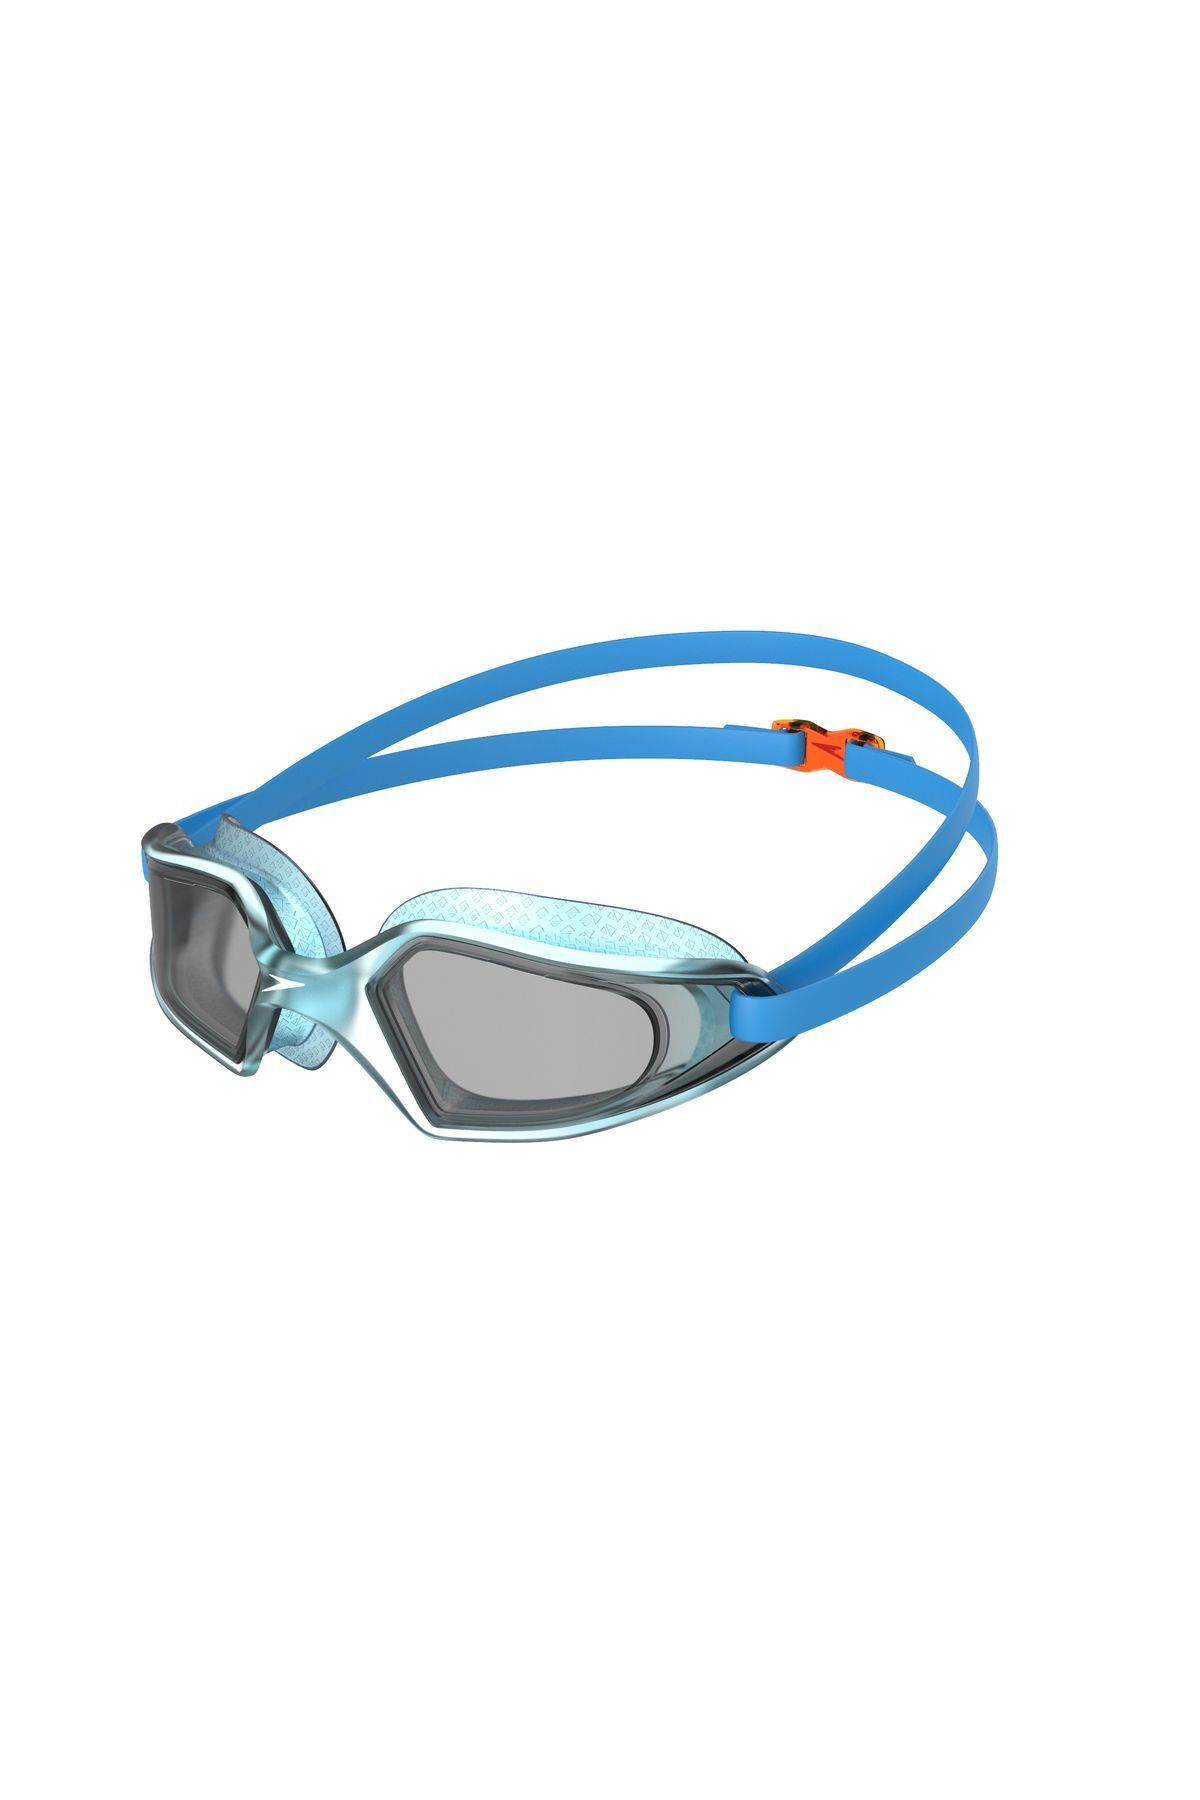 SPEEDO Futura Hydropulse Çocuk Yüzücü Gözlüğü